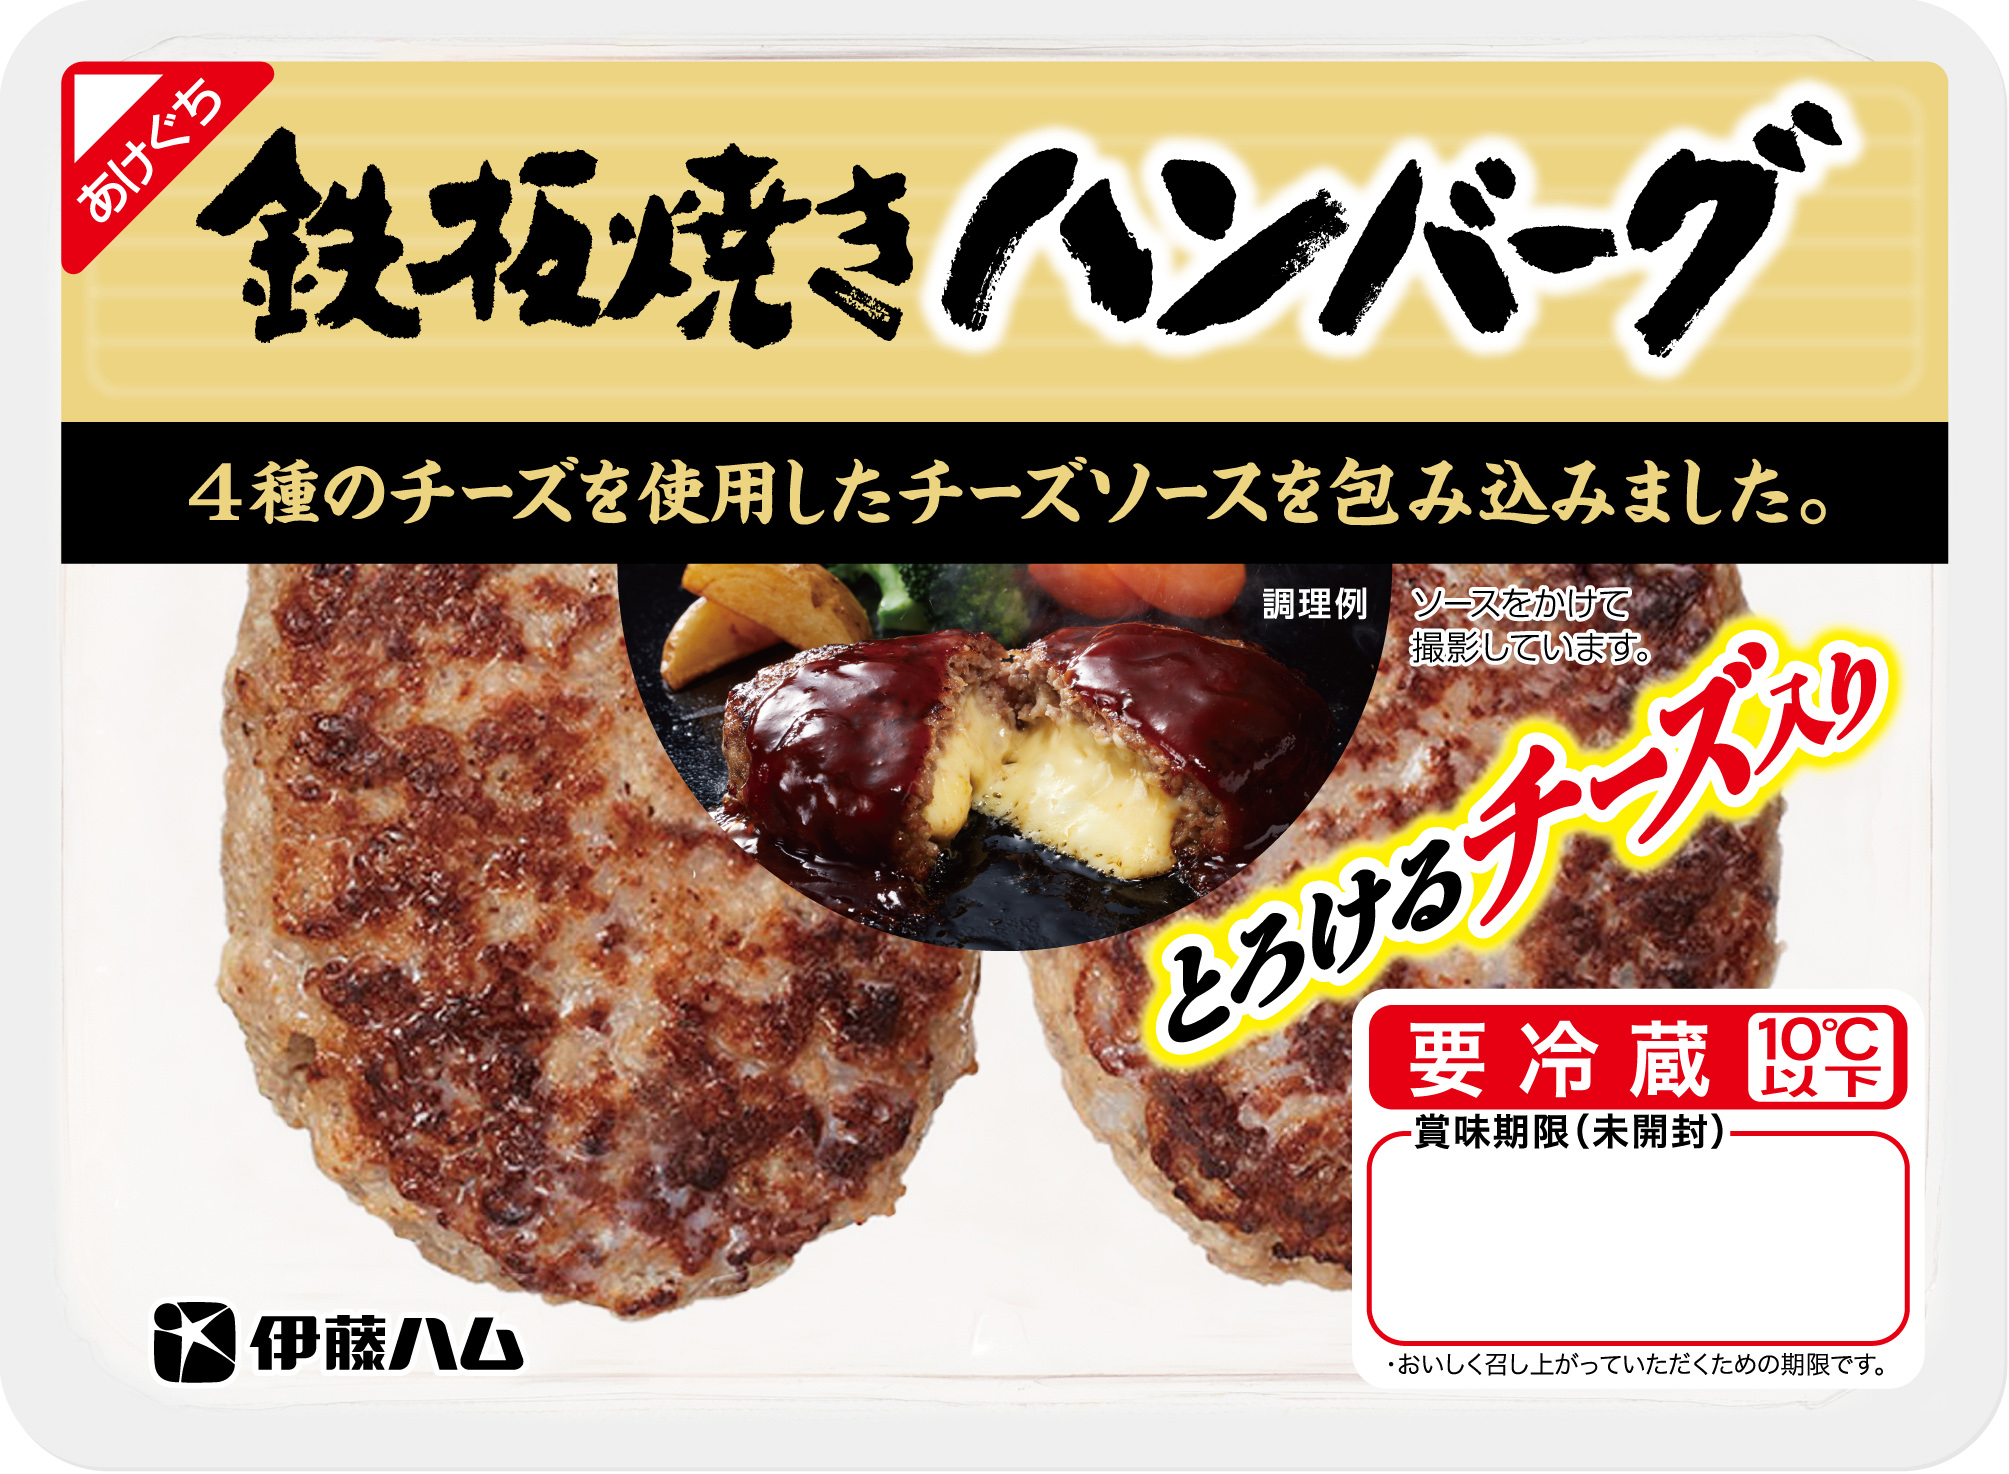 とろけるチーズ入り鉄板焼きハンバーグ を新発売 伊藤ハム米久hdのプレスリリース